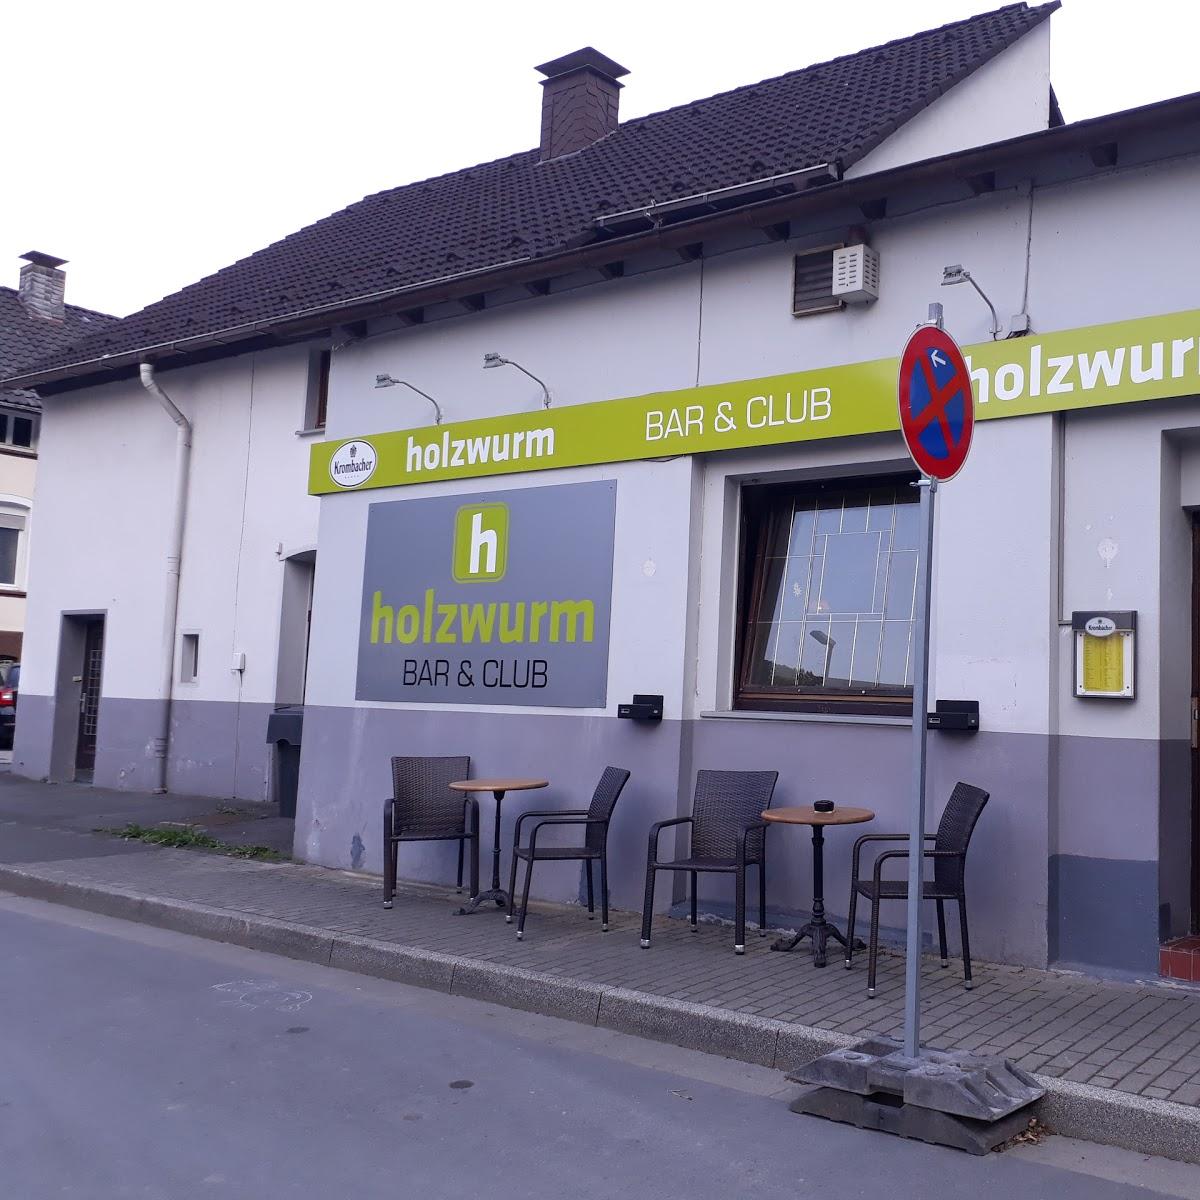 Restaurant "Holzwurm" in Plettenberg